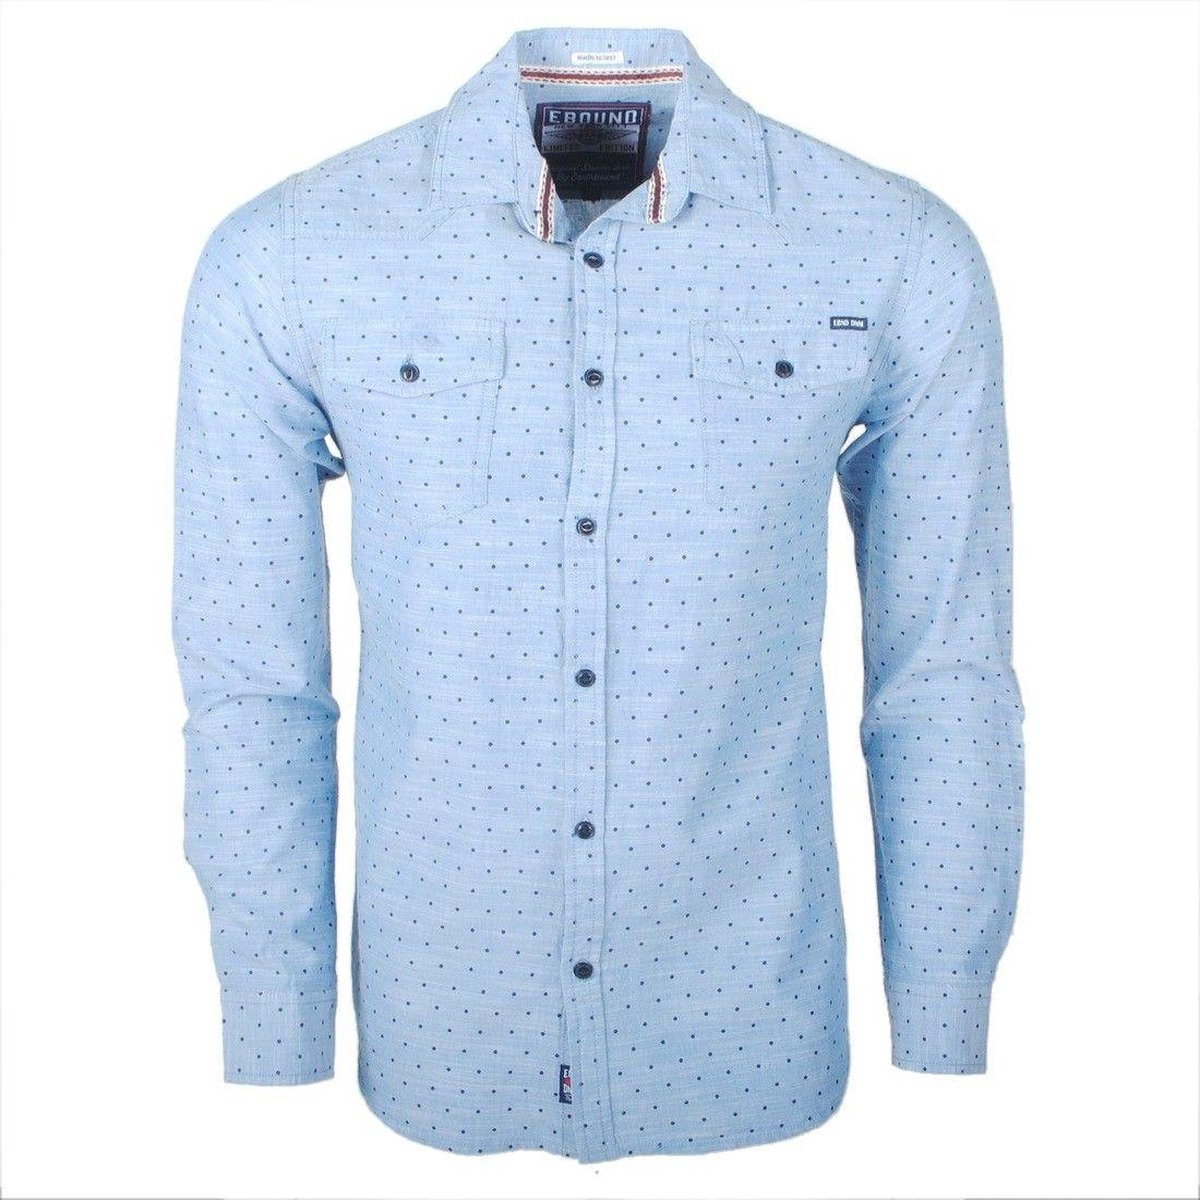 Earthbound - Heren Overhemd met 2 Borstzakjes - Lichtblauw met blauw stip